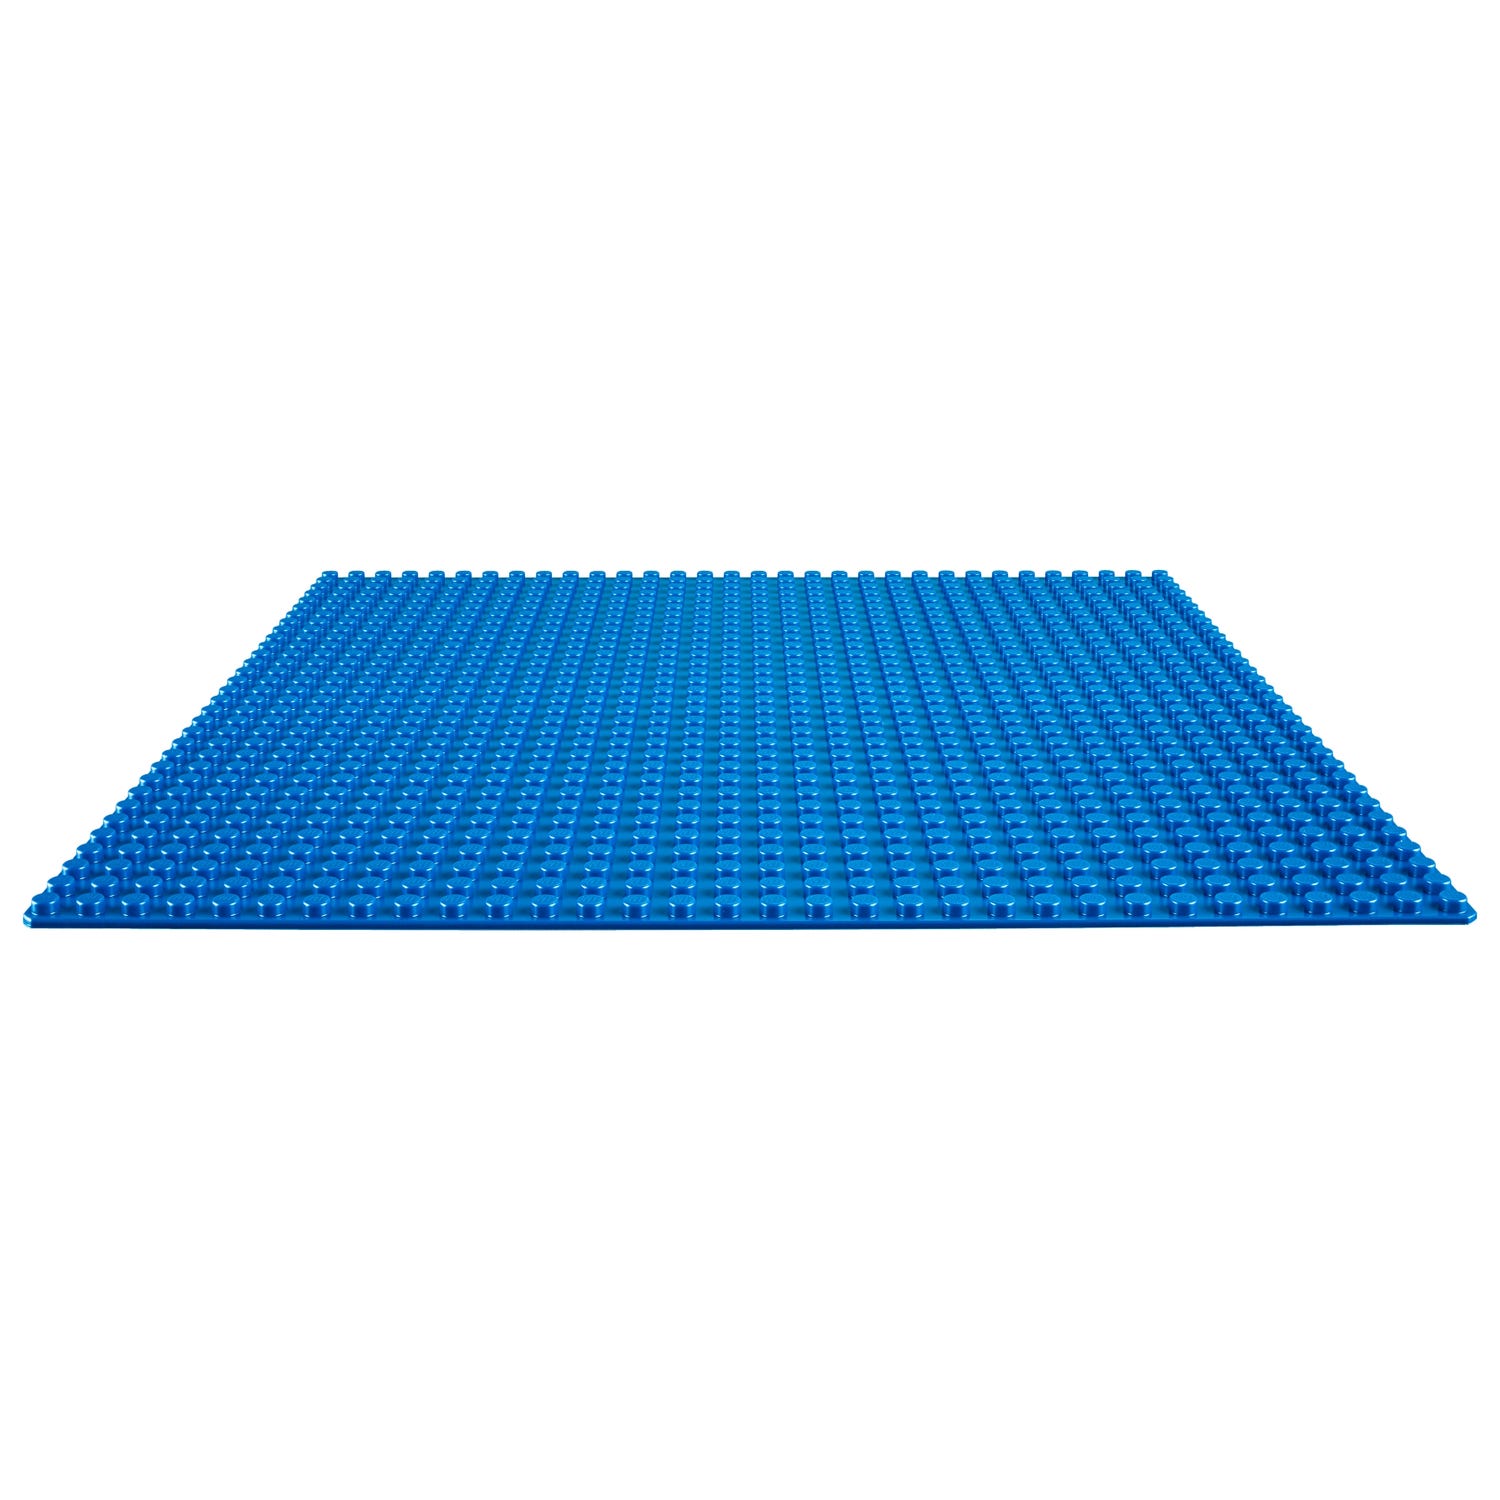 ik ben slaperig Afdaling plotseling Blauwe basisplaat 10714 | Classic | Officiële LEGO® winkel NL